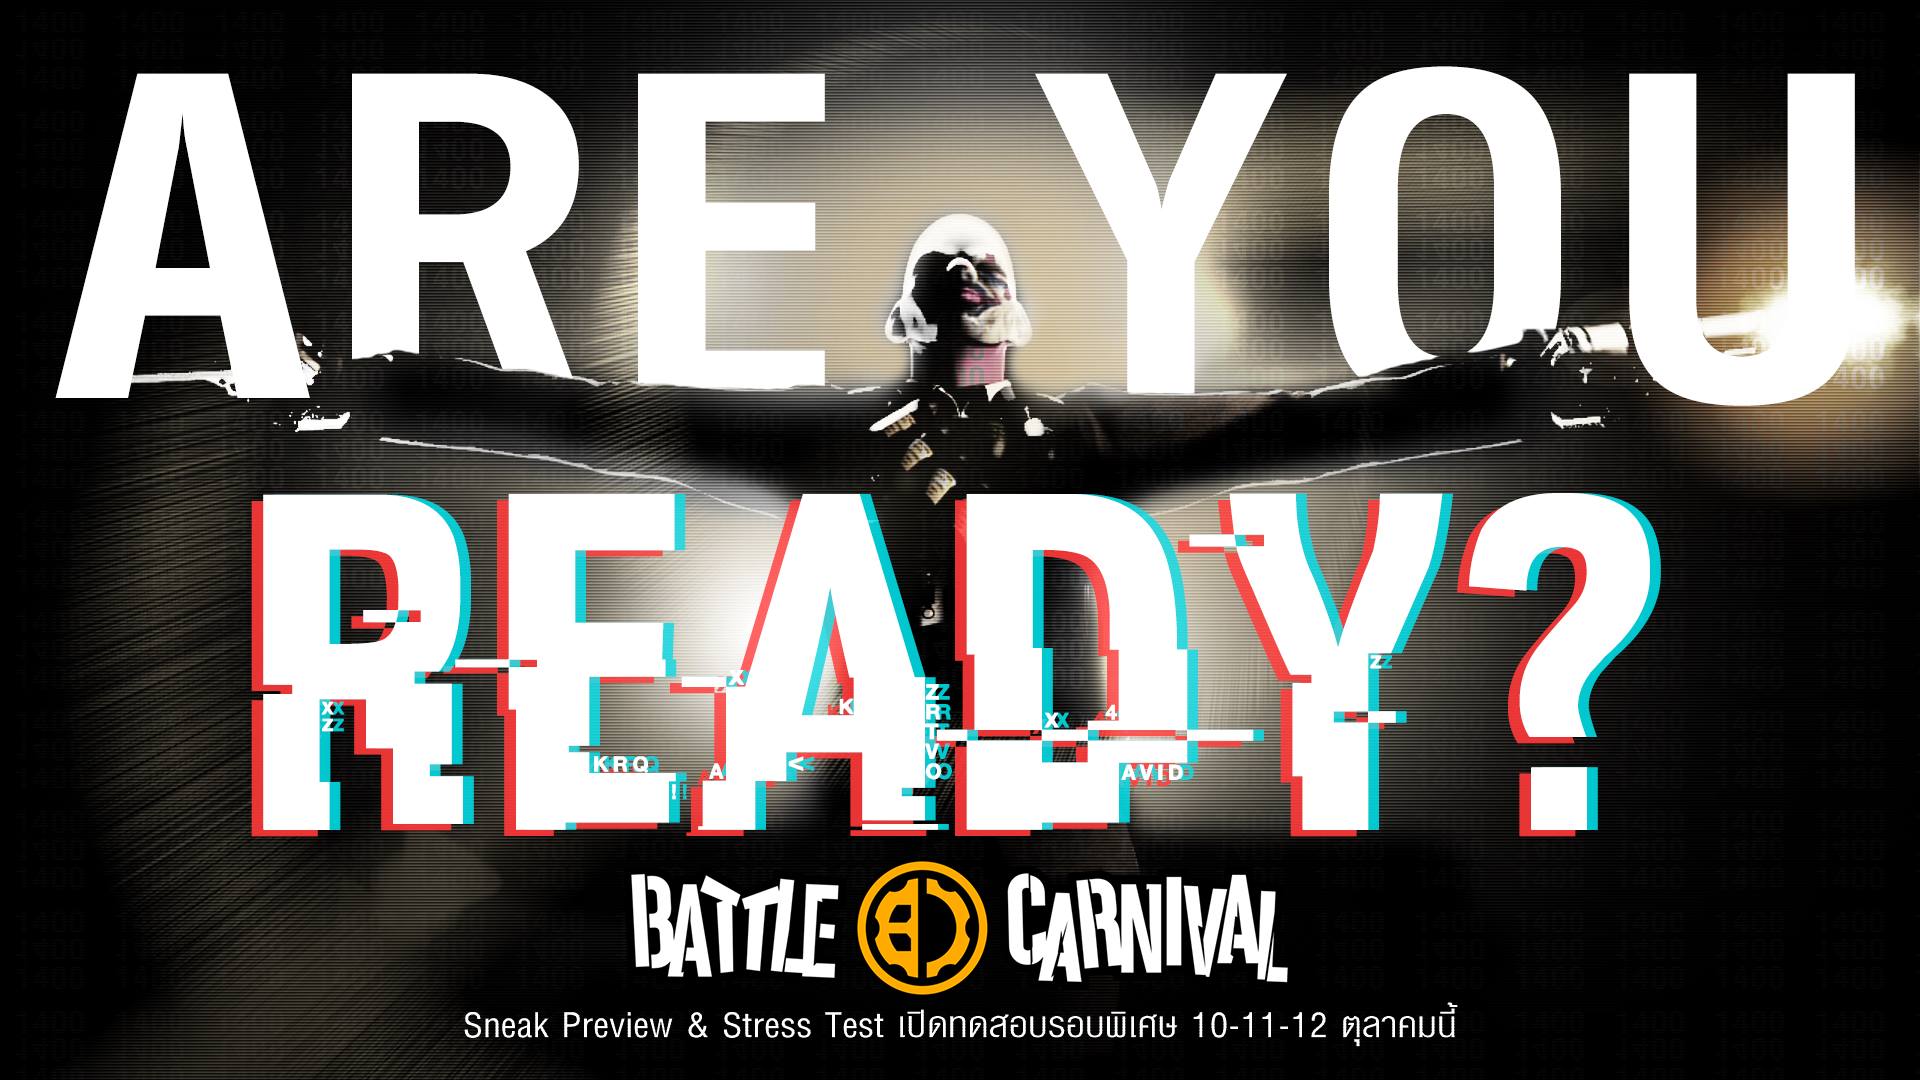 Battle Carnival101017 002